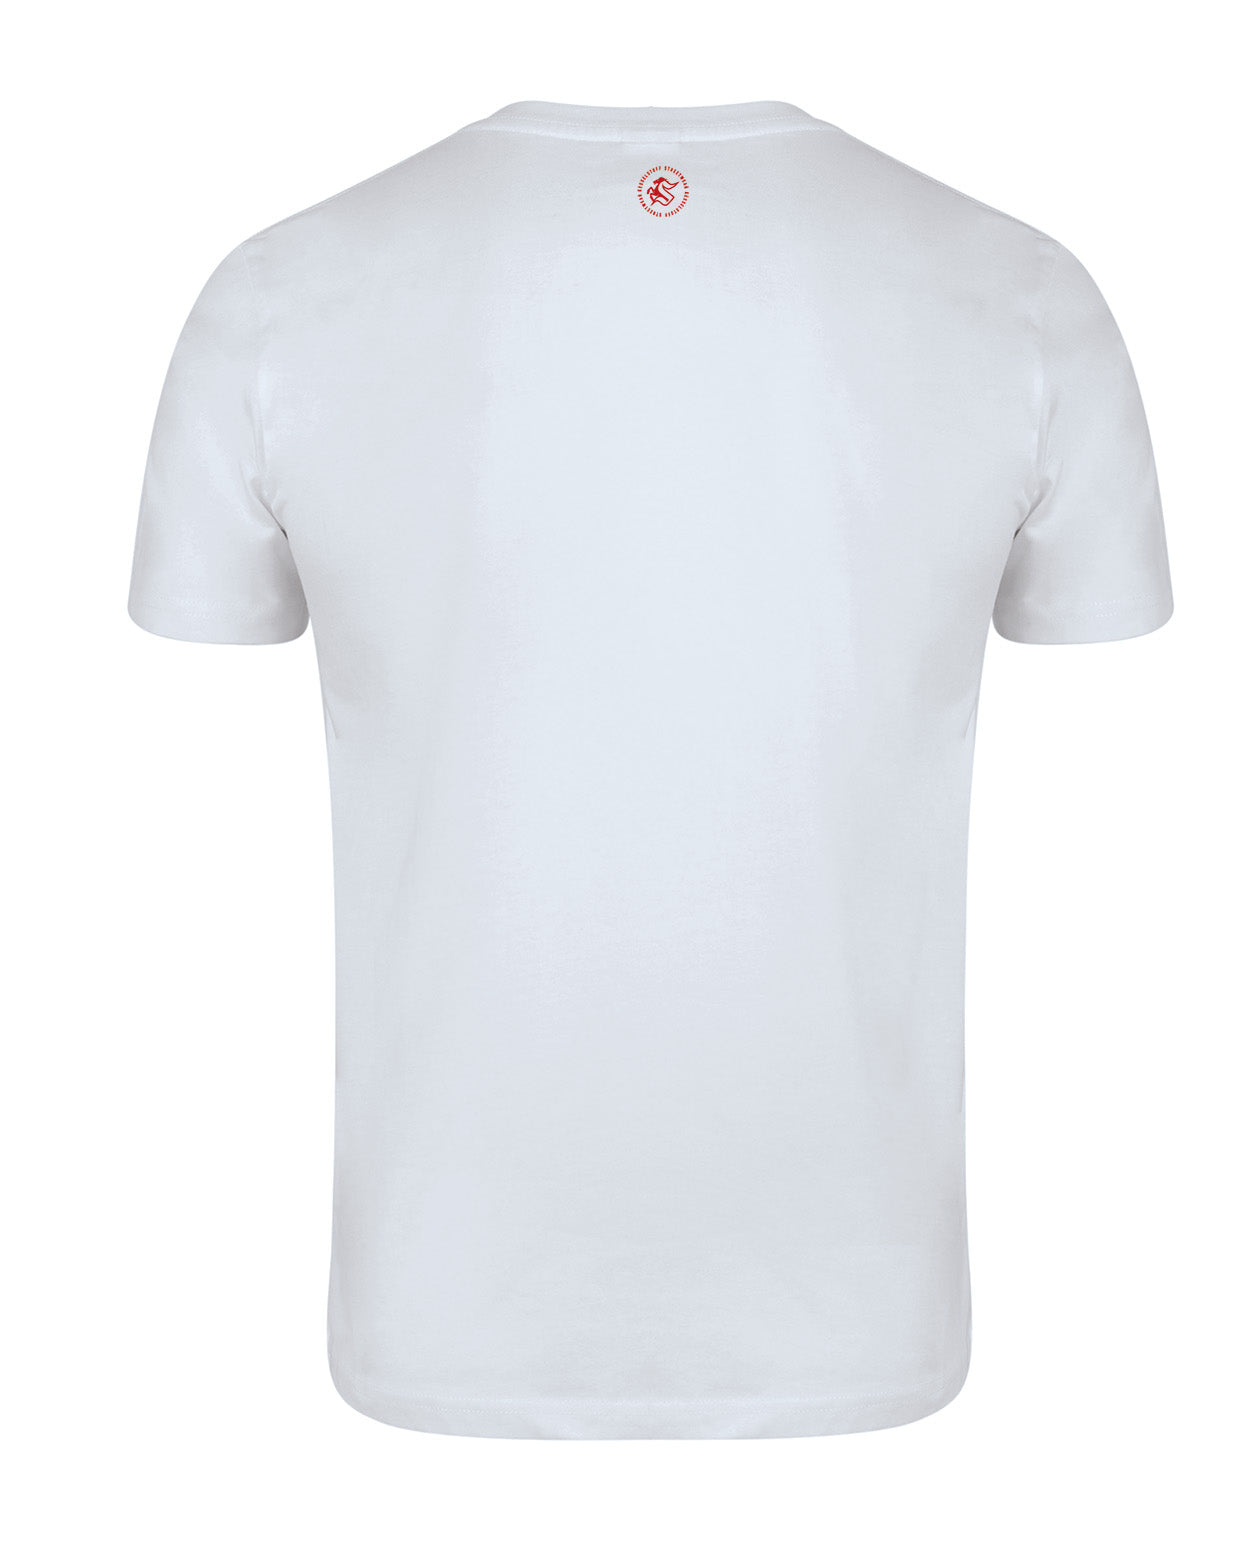 Shirt - "Wappen" - Weiß